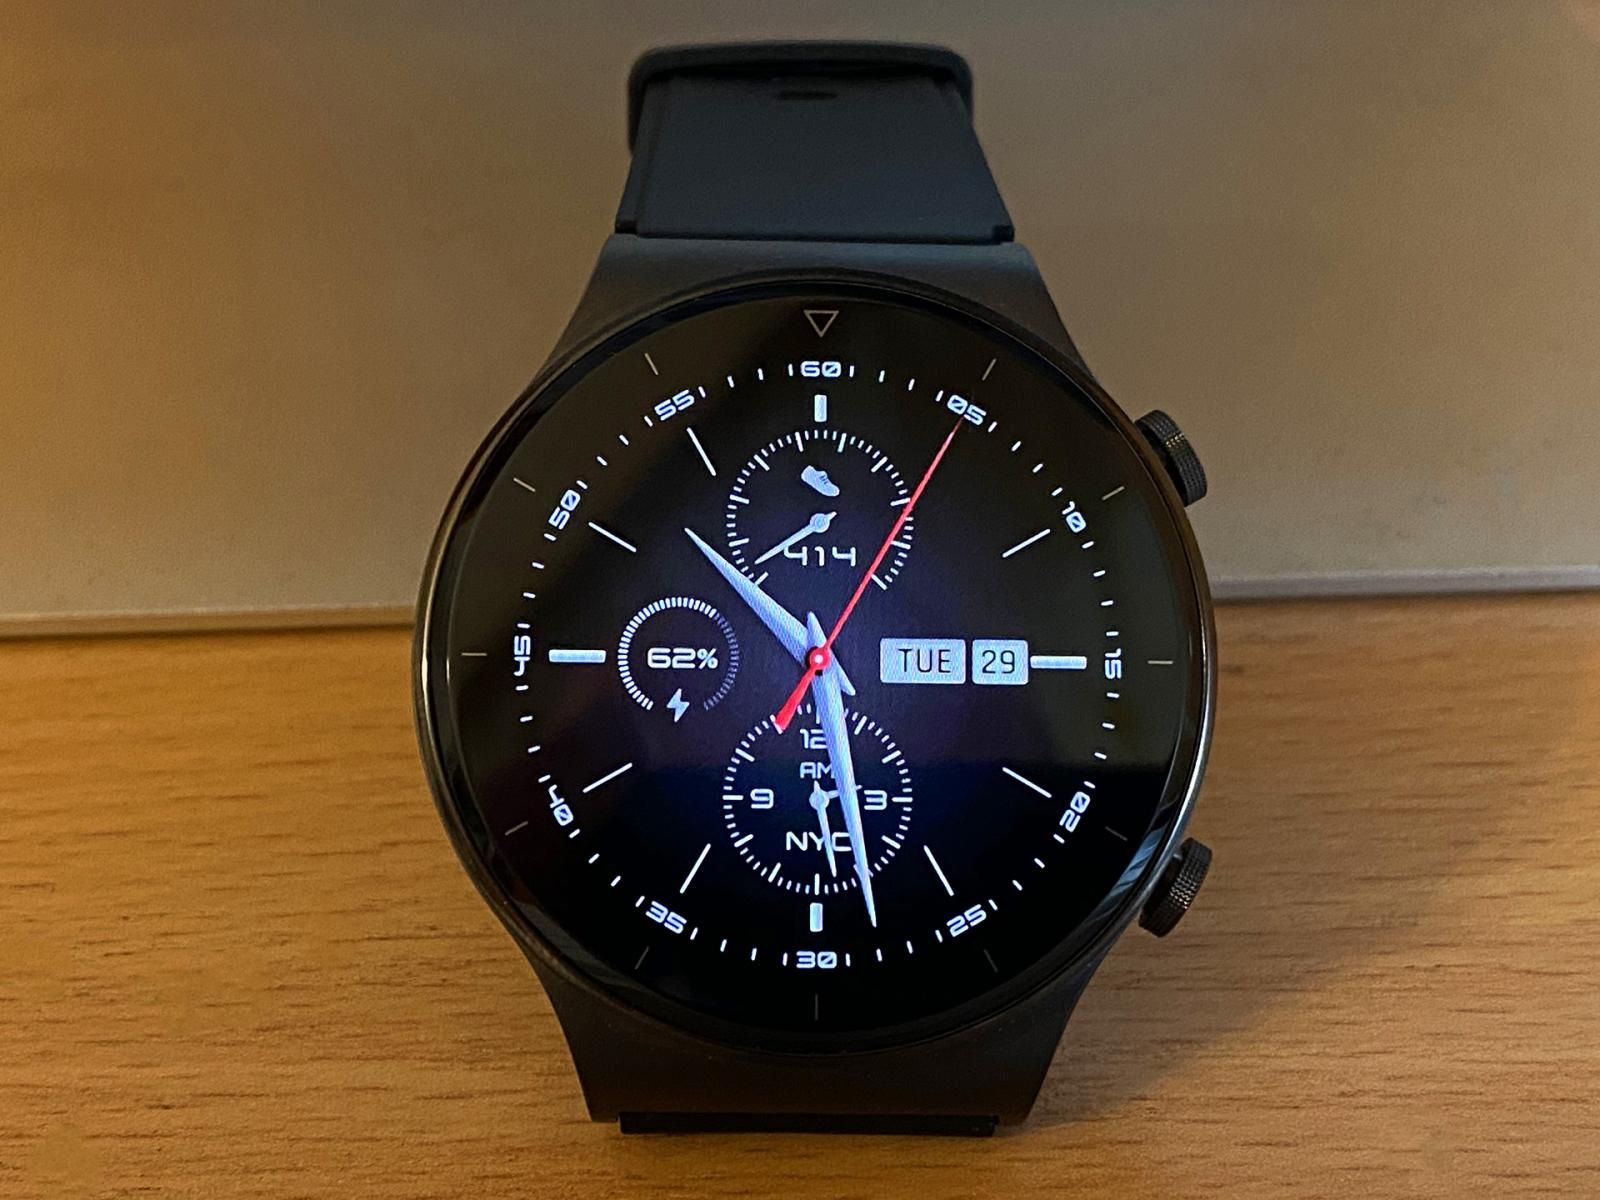 Huawei Watch GT 2 Pro review